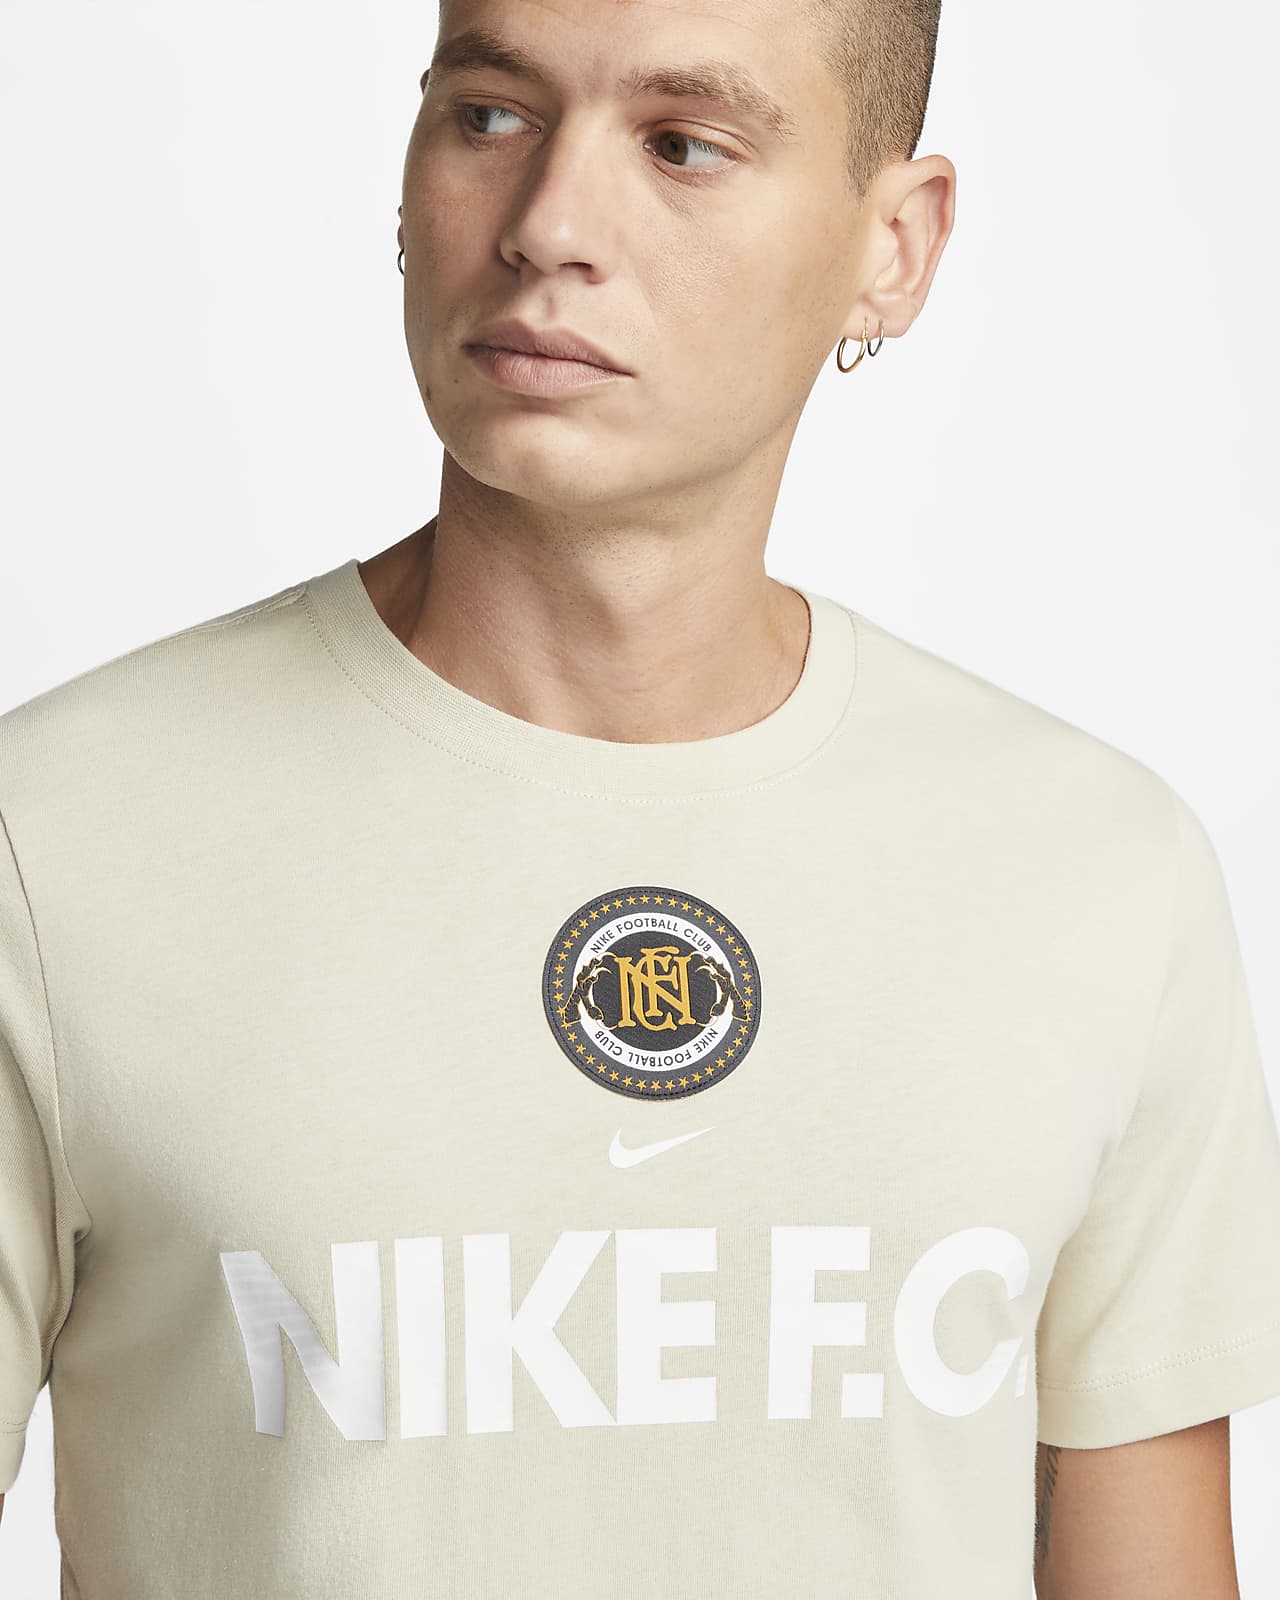 financiën Wrak toxiciteit Nike Men's Football T-Shirt. Nike LU